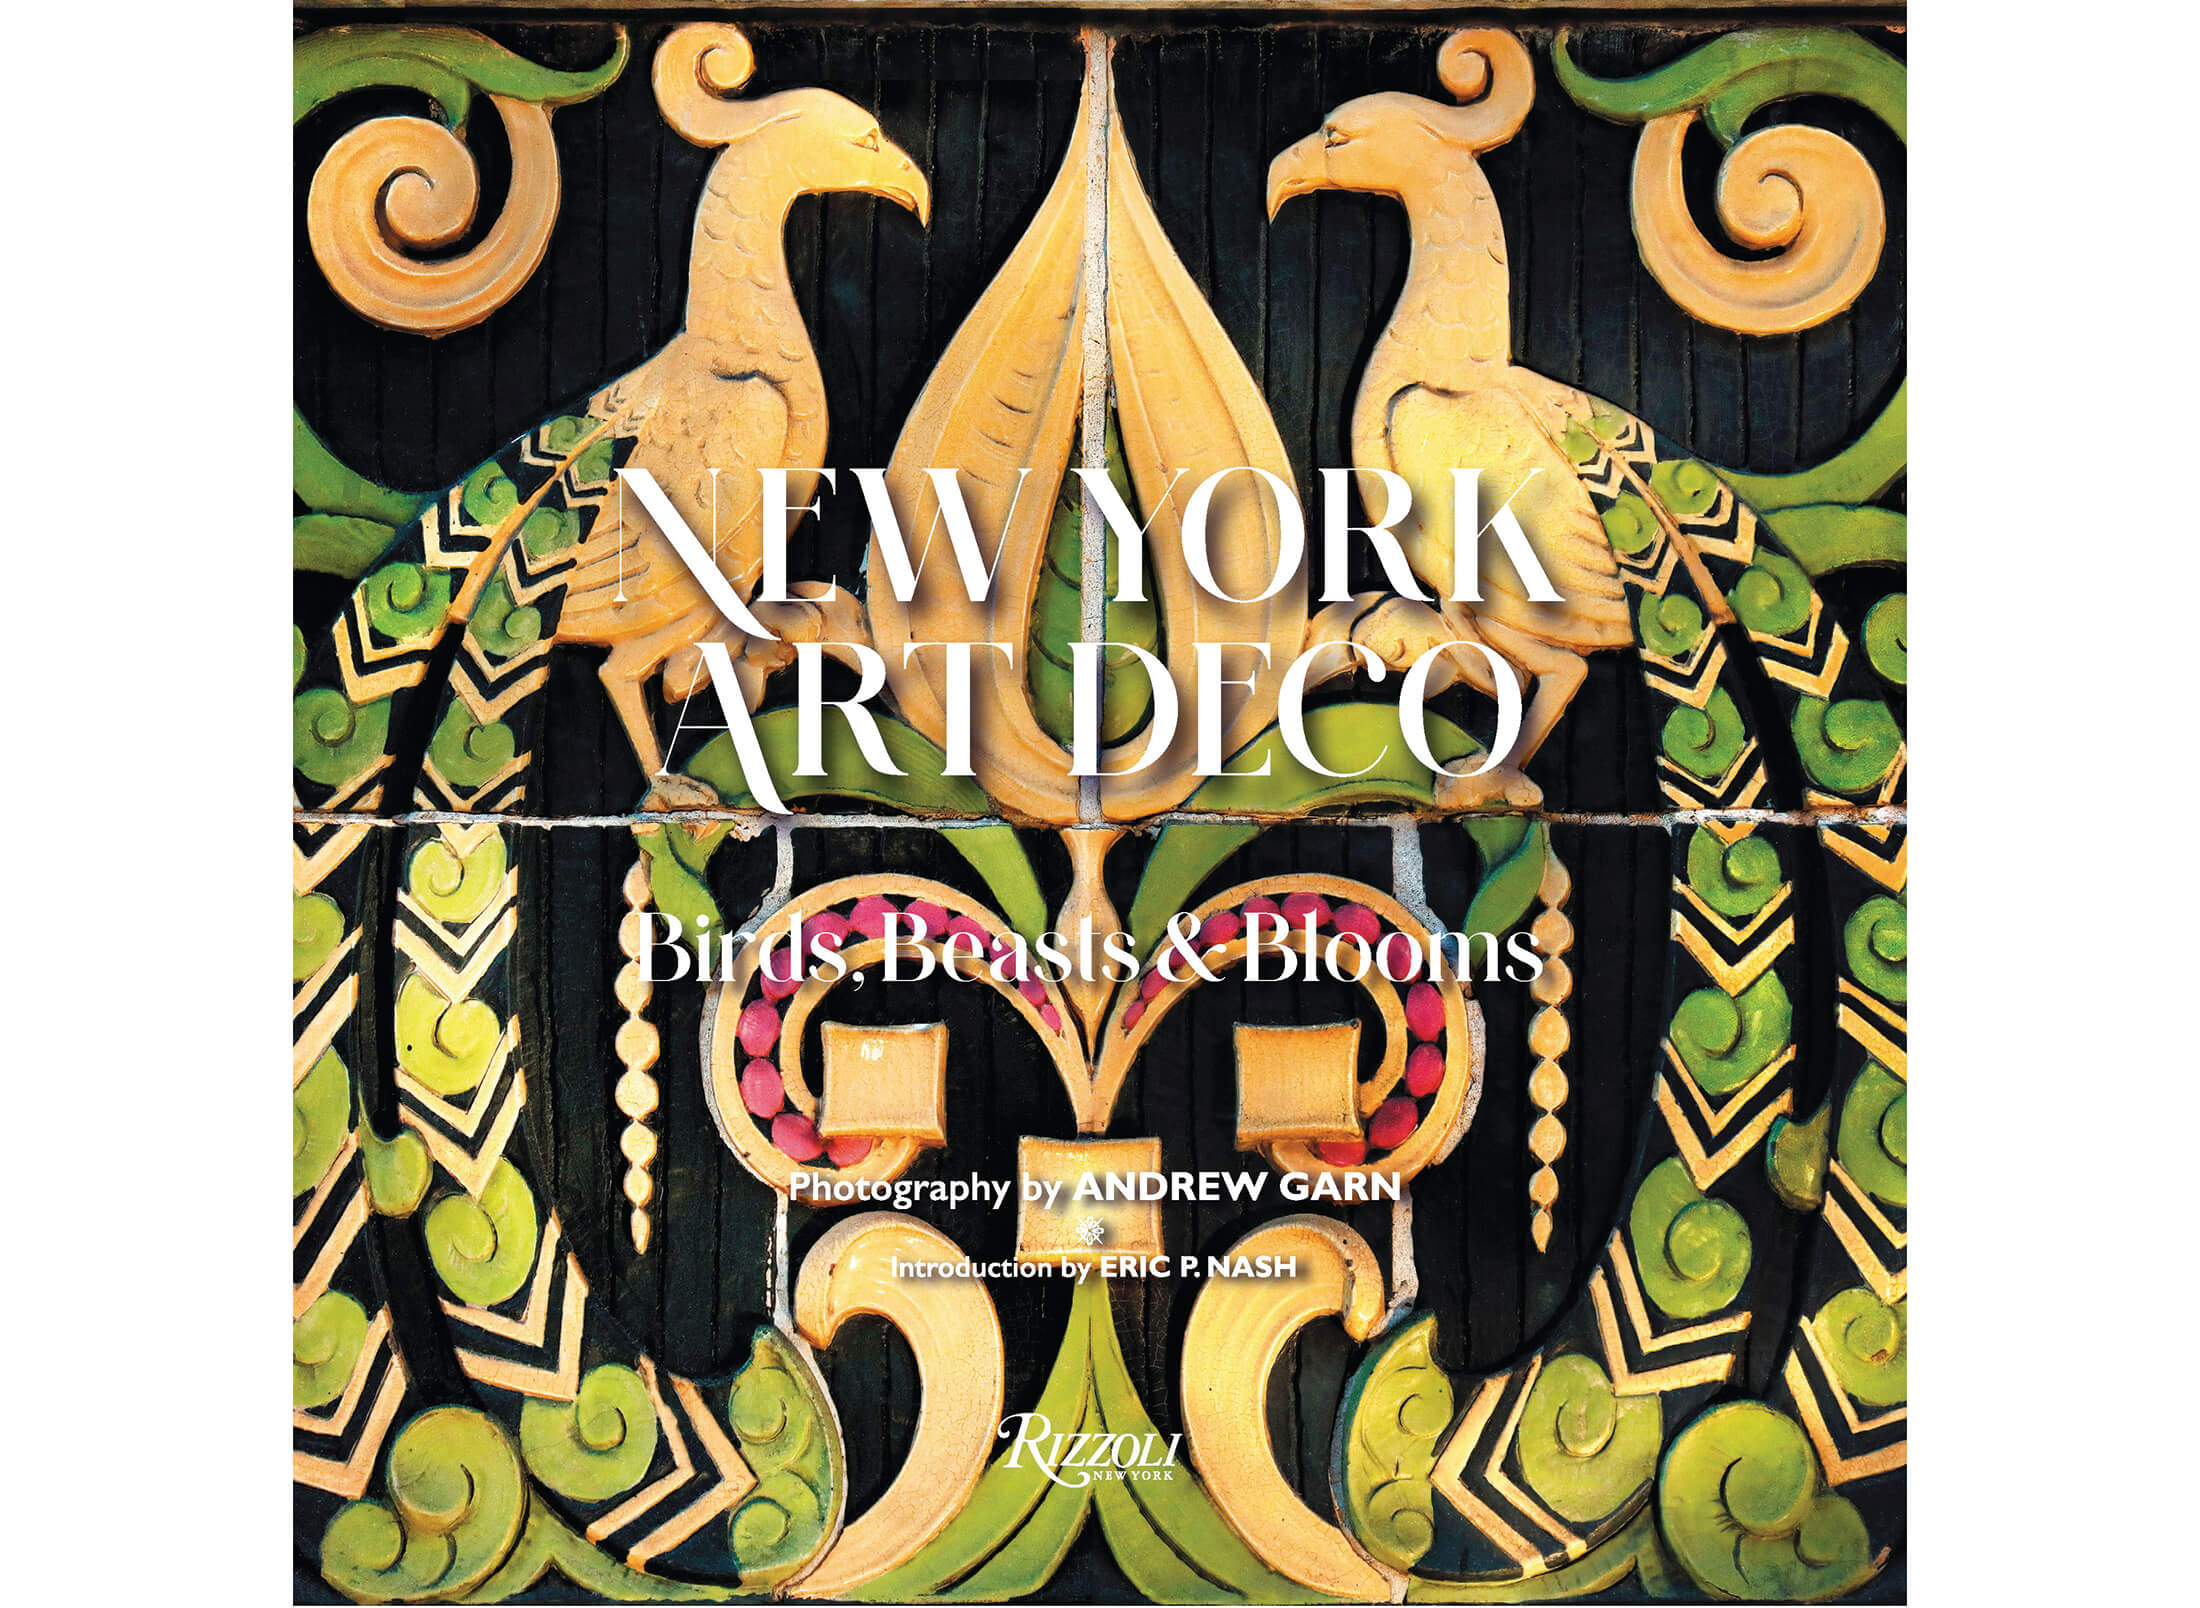 cover of Ny York Art Deco